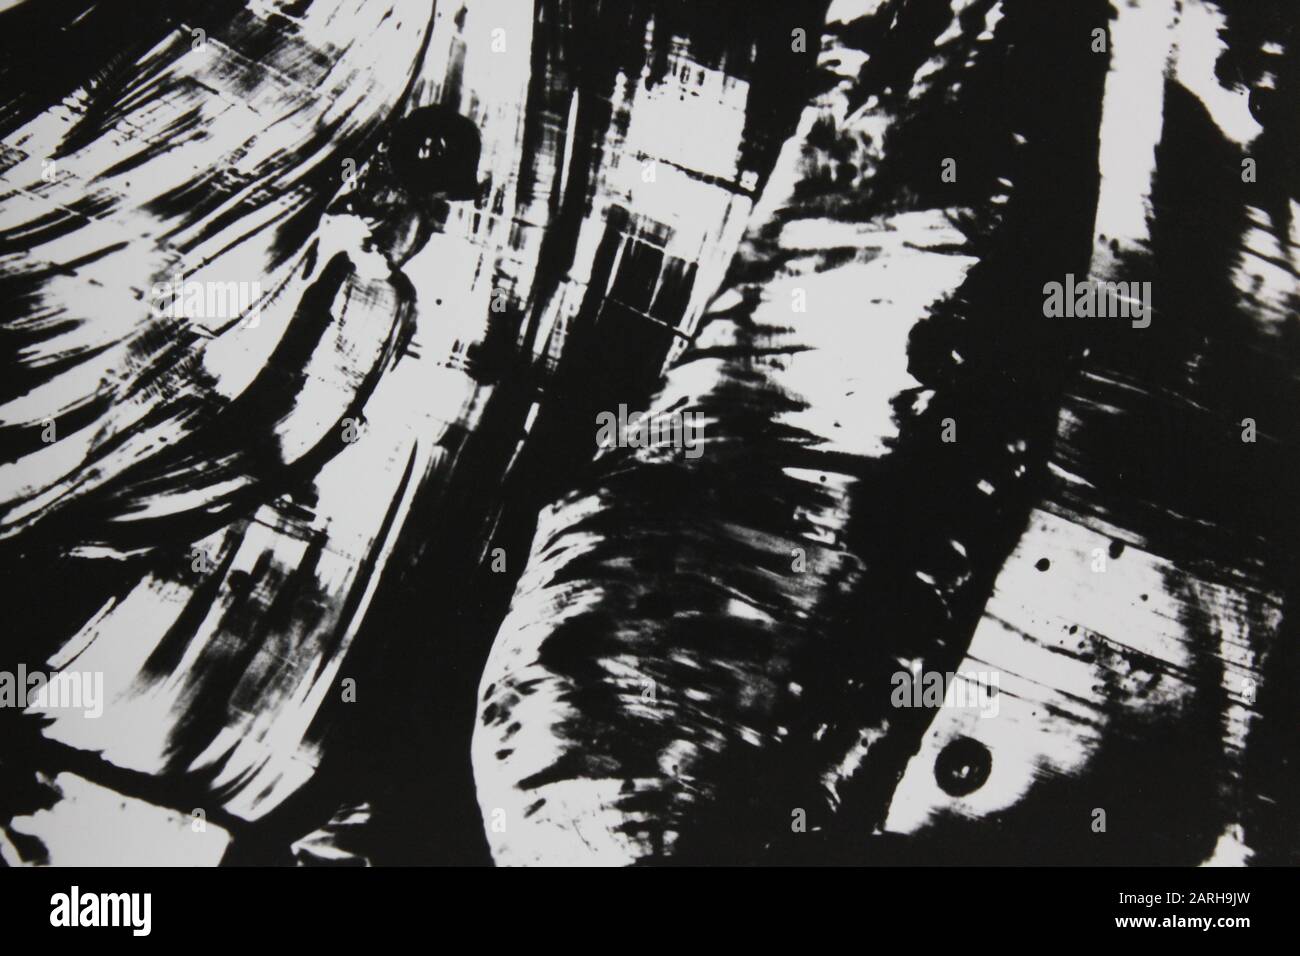 Feine Siebziger Schwarz-Weiß-extreme abstrakte Fotografie Stockfoto